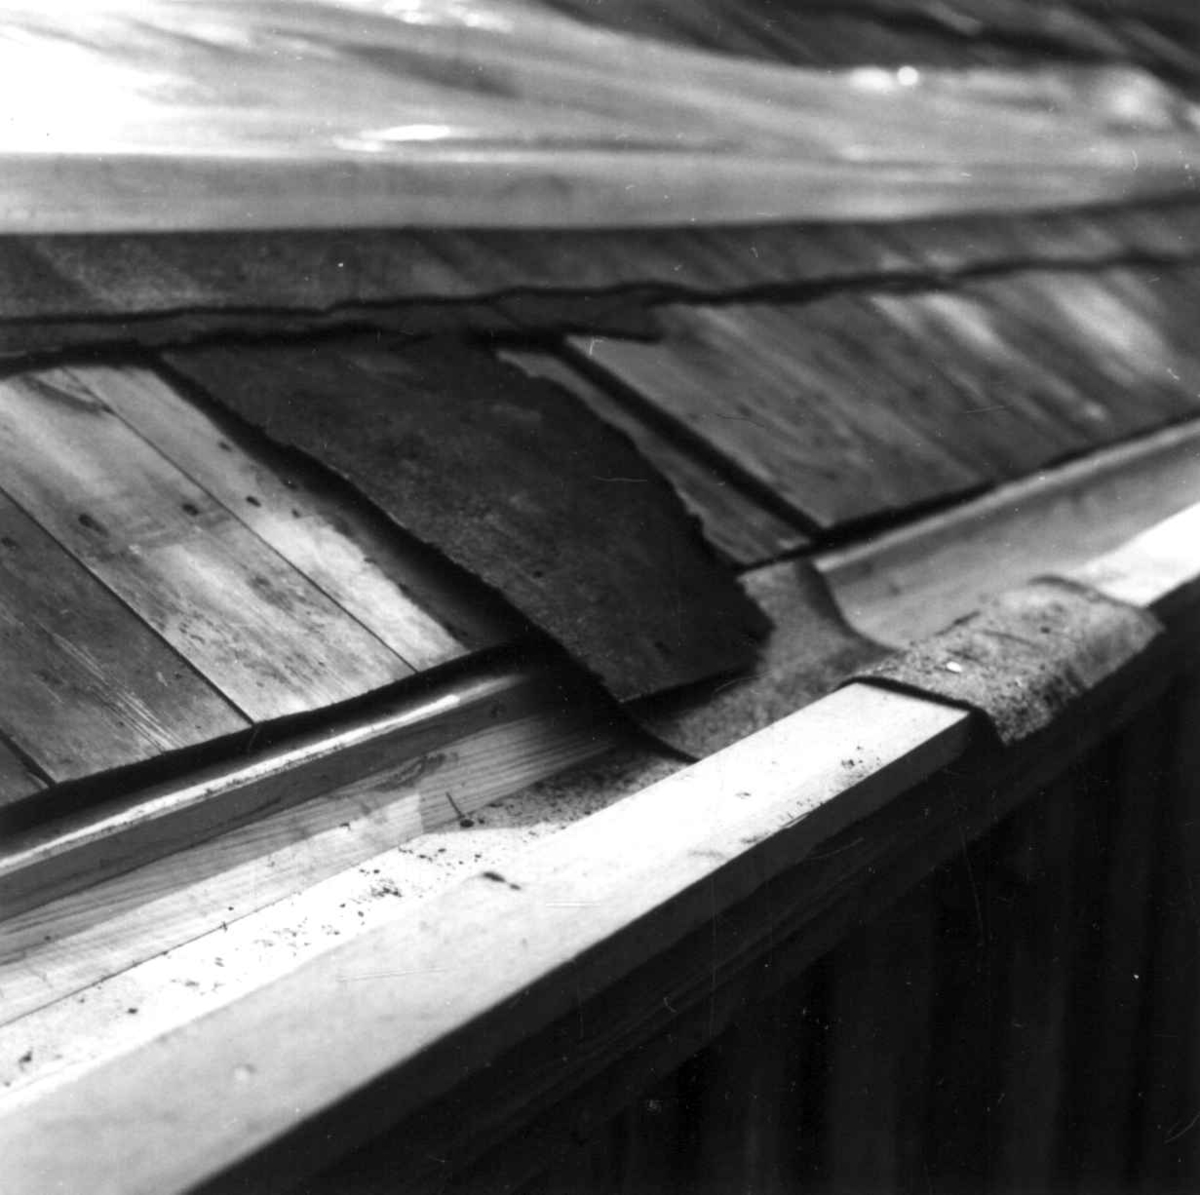 Hovedbygning fra Stiklestad Vestre, Verdal i Nord-Trøndelag ("lånna"). Reparasjon av tak, kant. Detalj av reparert trerenne. Prøven viser papptekkingsmåten. Fotografert av Arne Berg, august 1979.